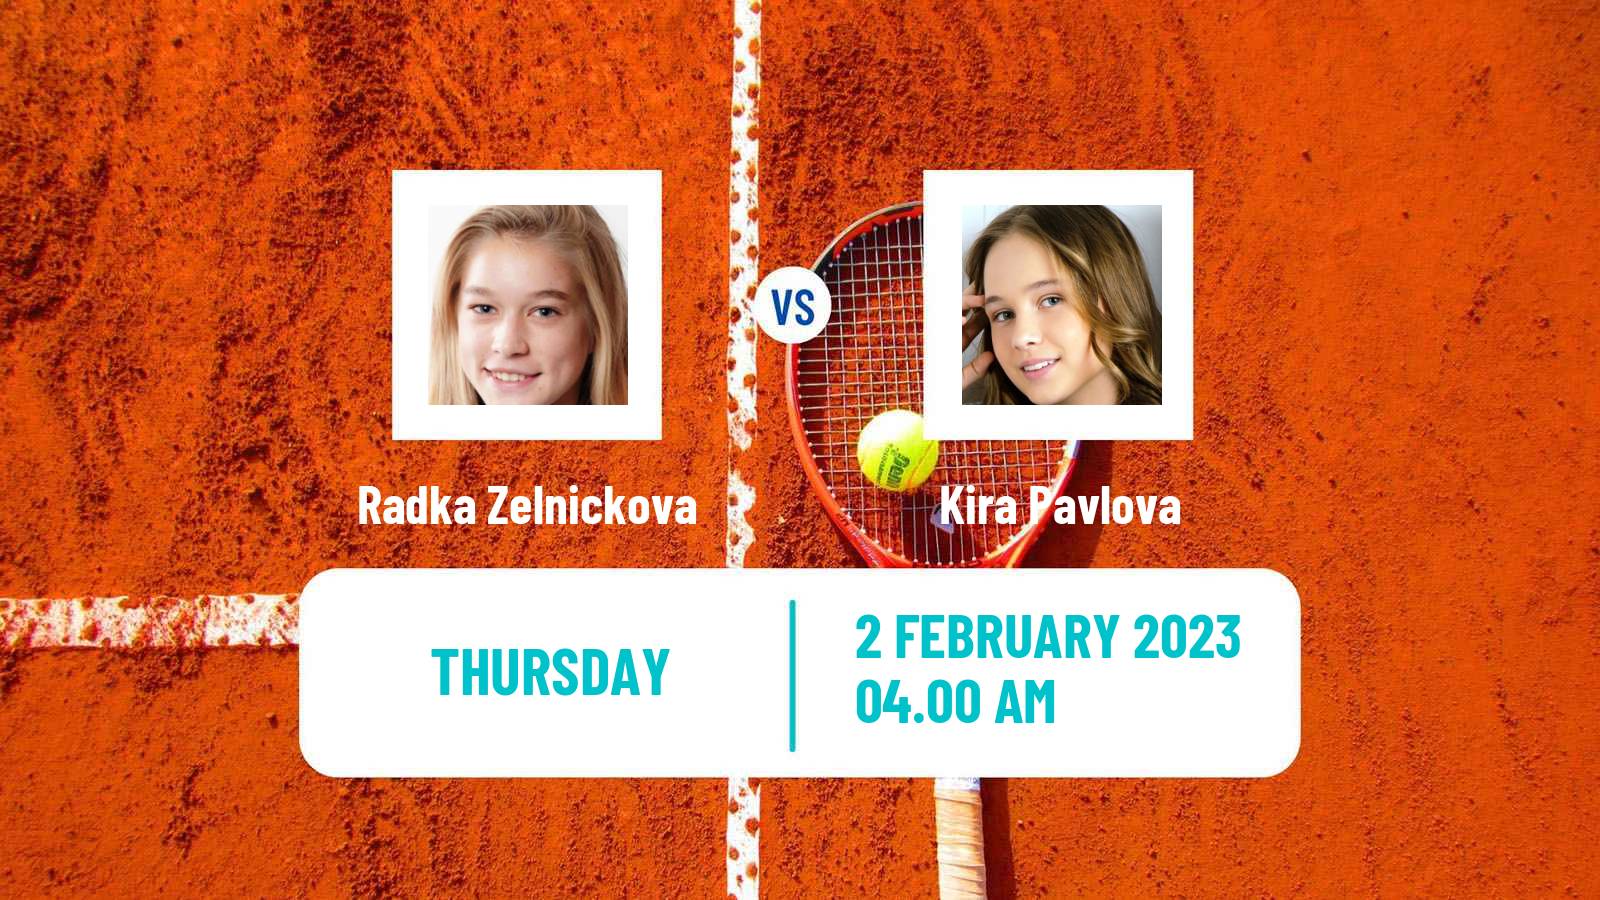 Tennis ITF Tournaments Radka Zelnickova - Kira Pavlova